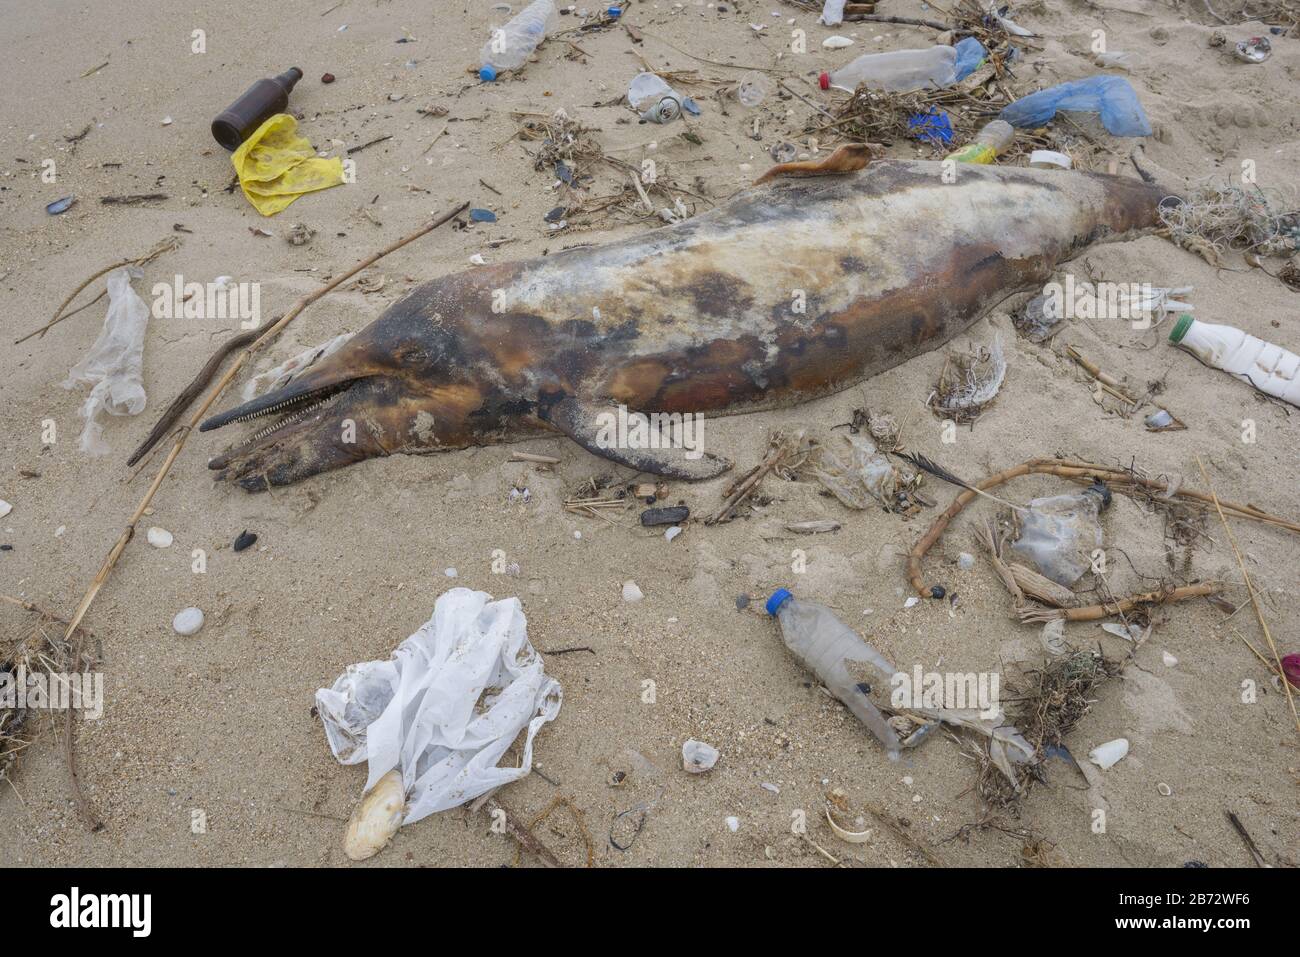 Delphin, der von den Wellen geworfen wird, liegt am Strand und ist von Plastikmüll umgeben. Flaschen, Beutel und andere Kunststoffschutt in der Nähe sind Delfine Stockfoto